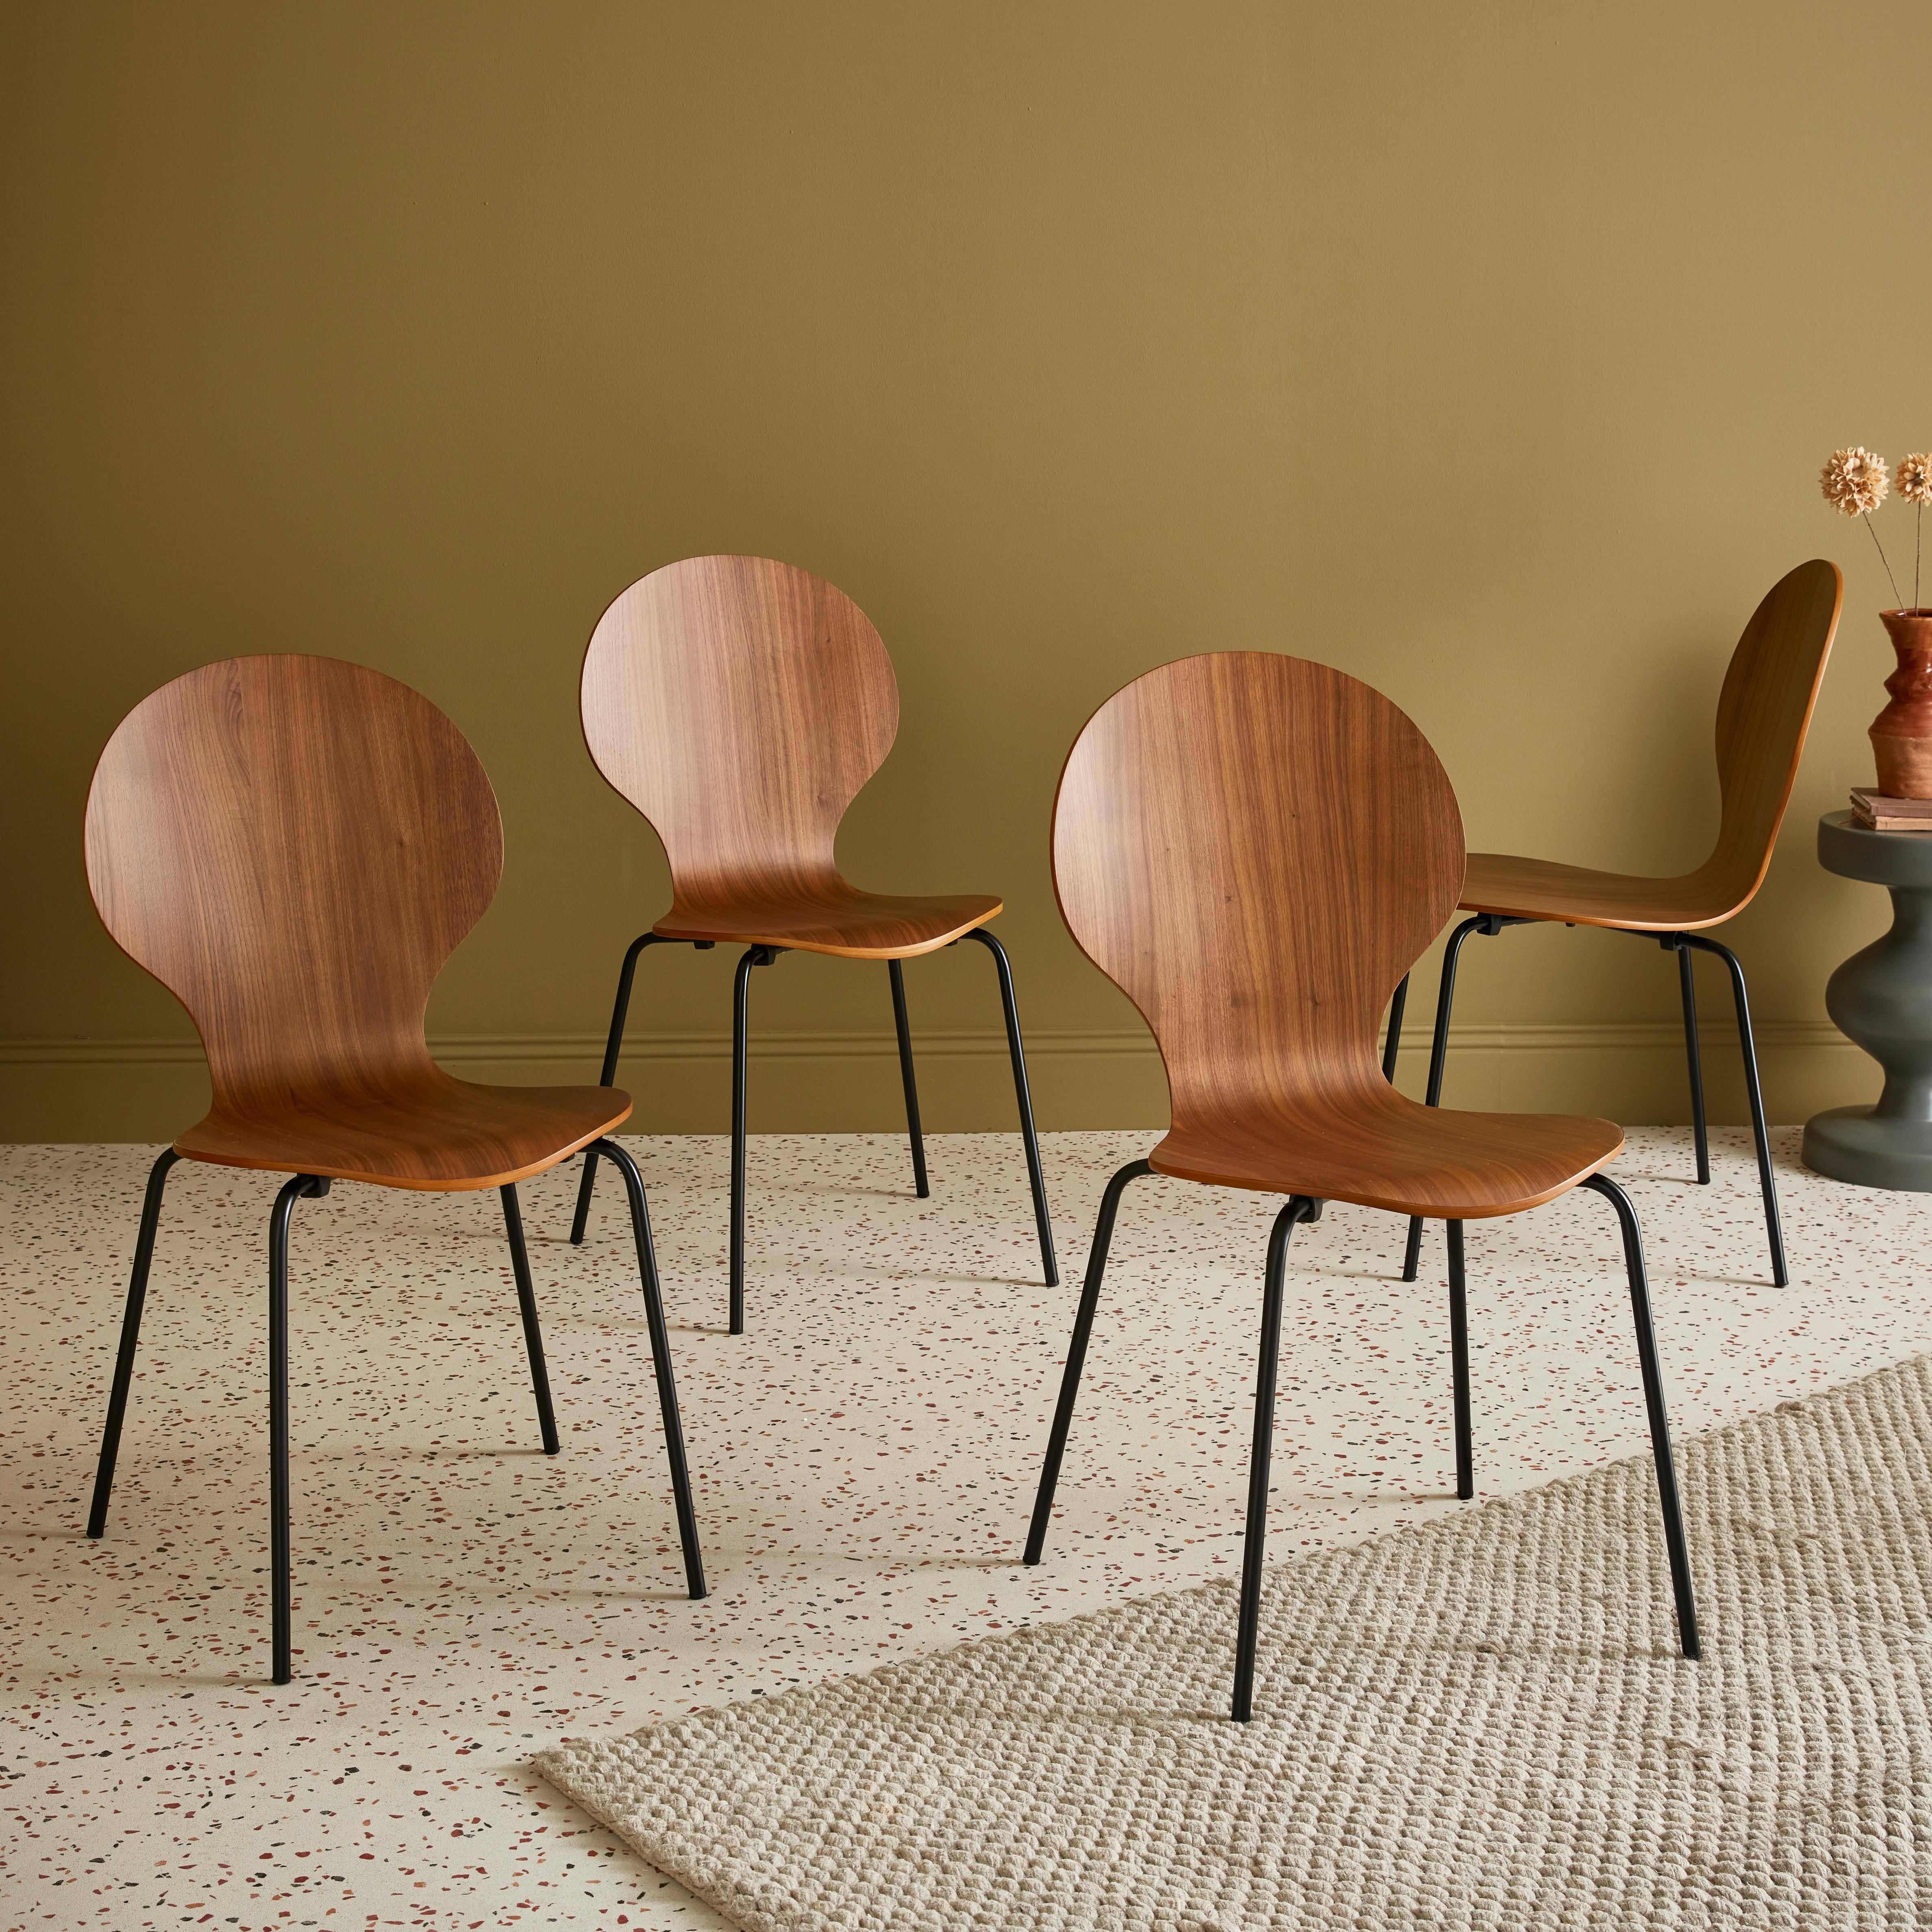 Set di 4 sedie legno scuro retro impilabili, legno di hevea e compensato, gambe in acciaio, Naomi, L 43 x P 48 x H 87cm Photo1